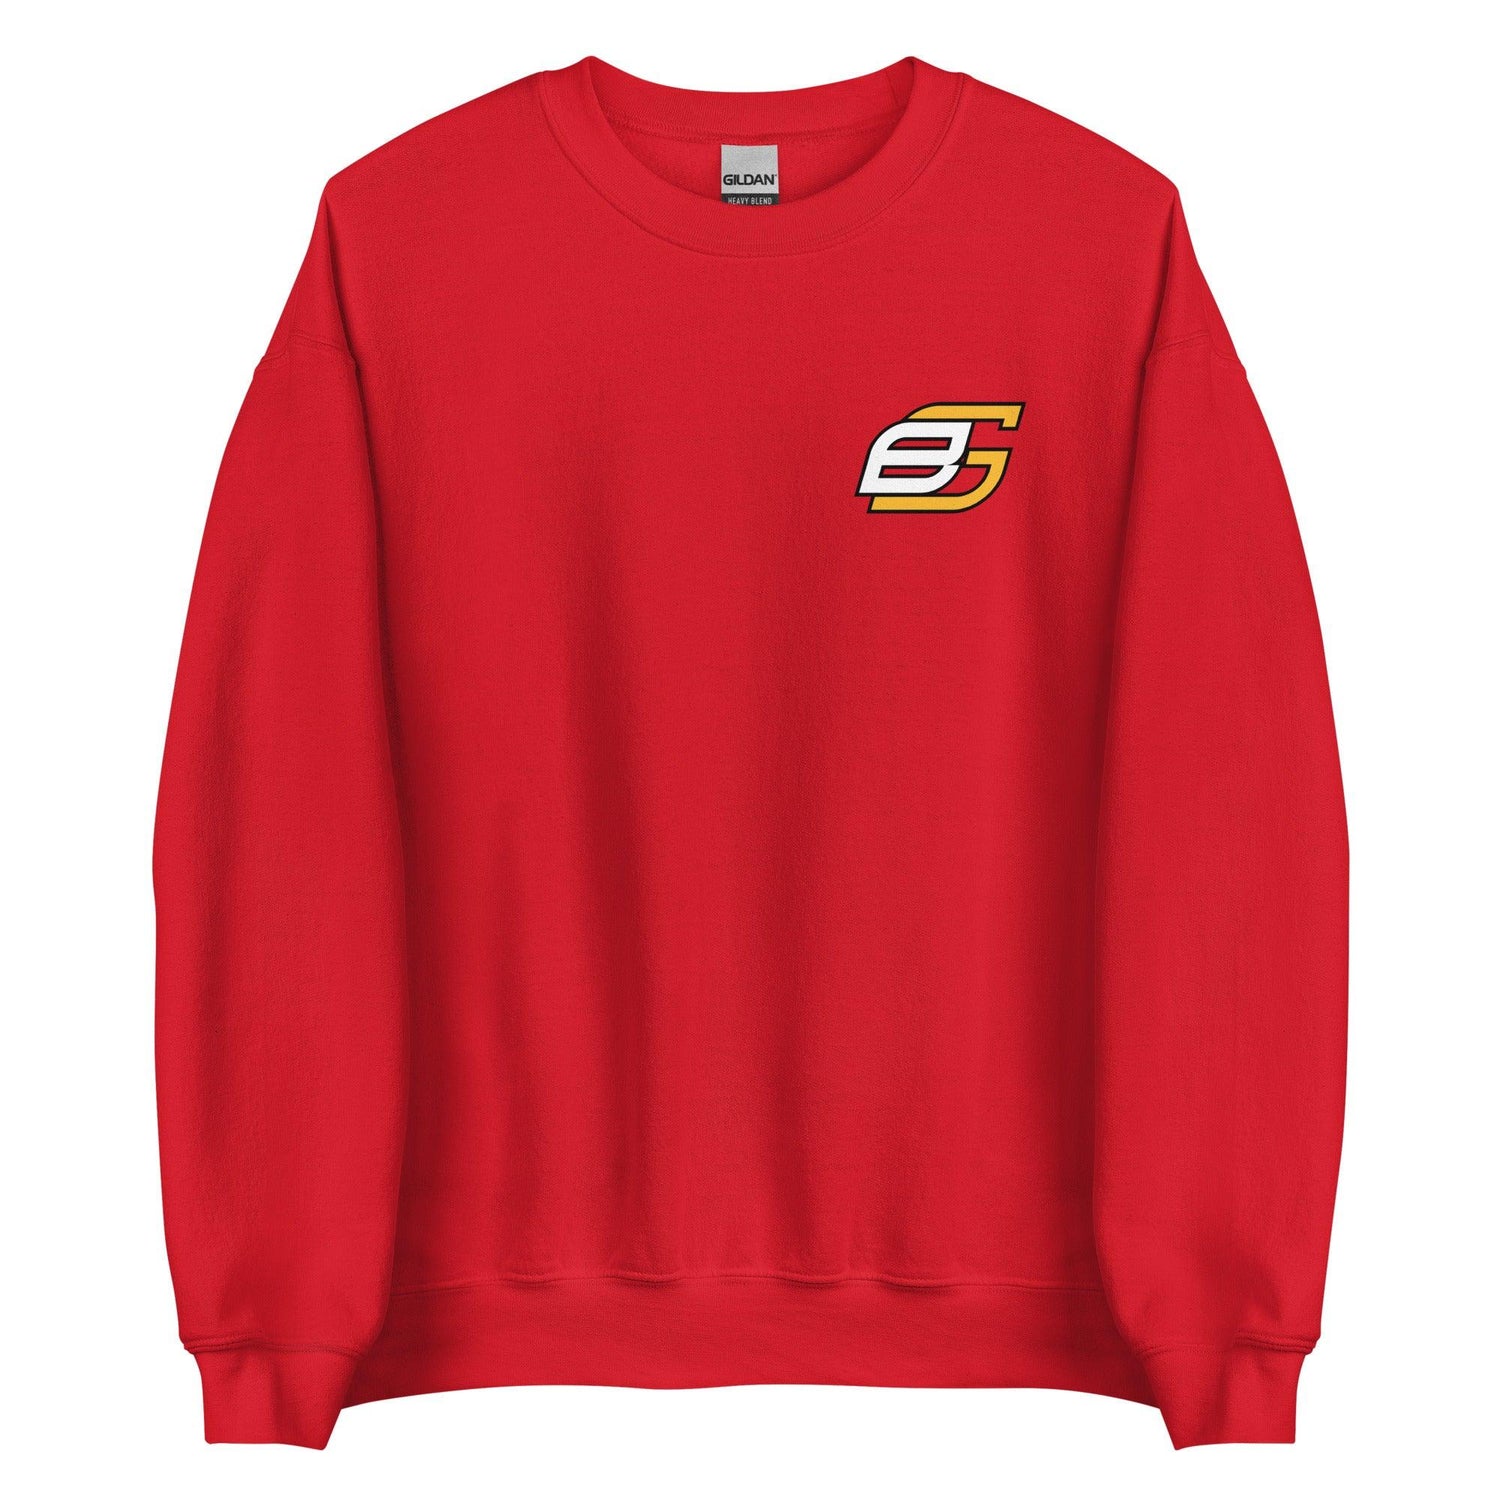 Ben Gamel "Elite" Sweatshirt - Fan Arch